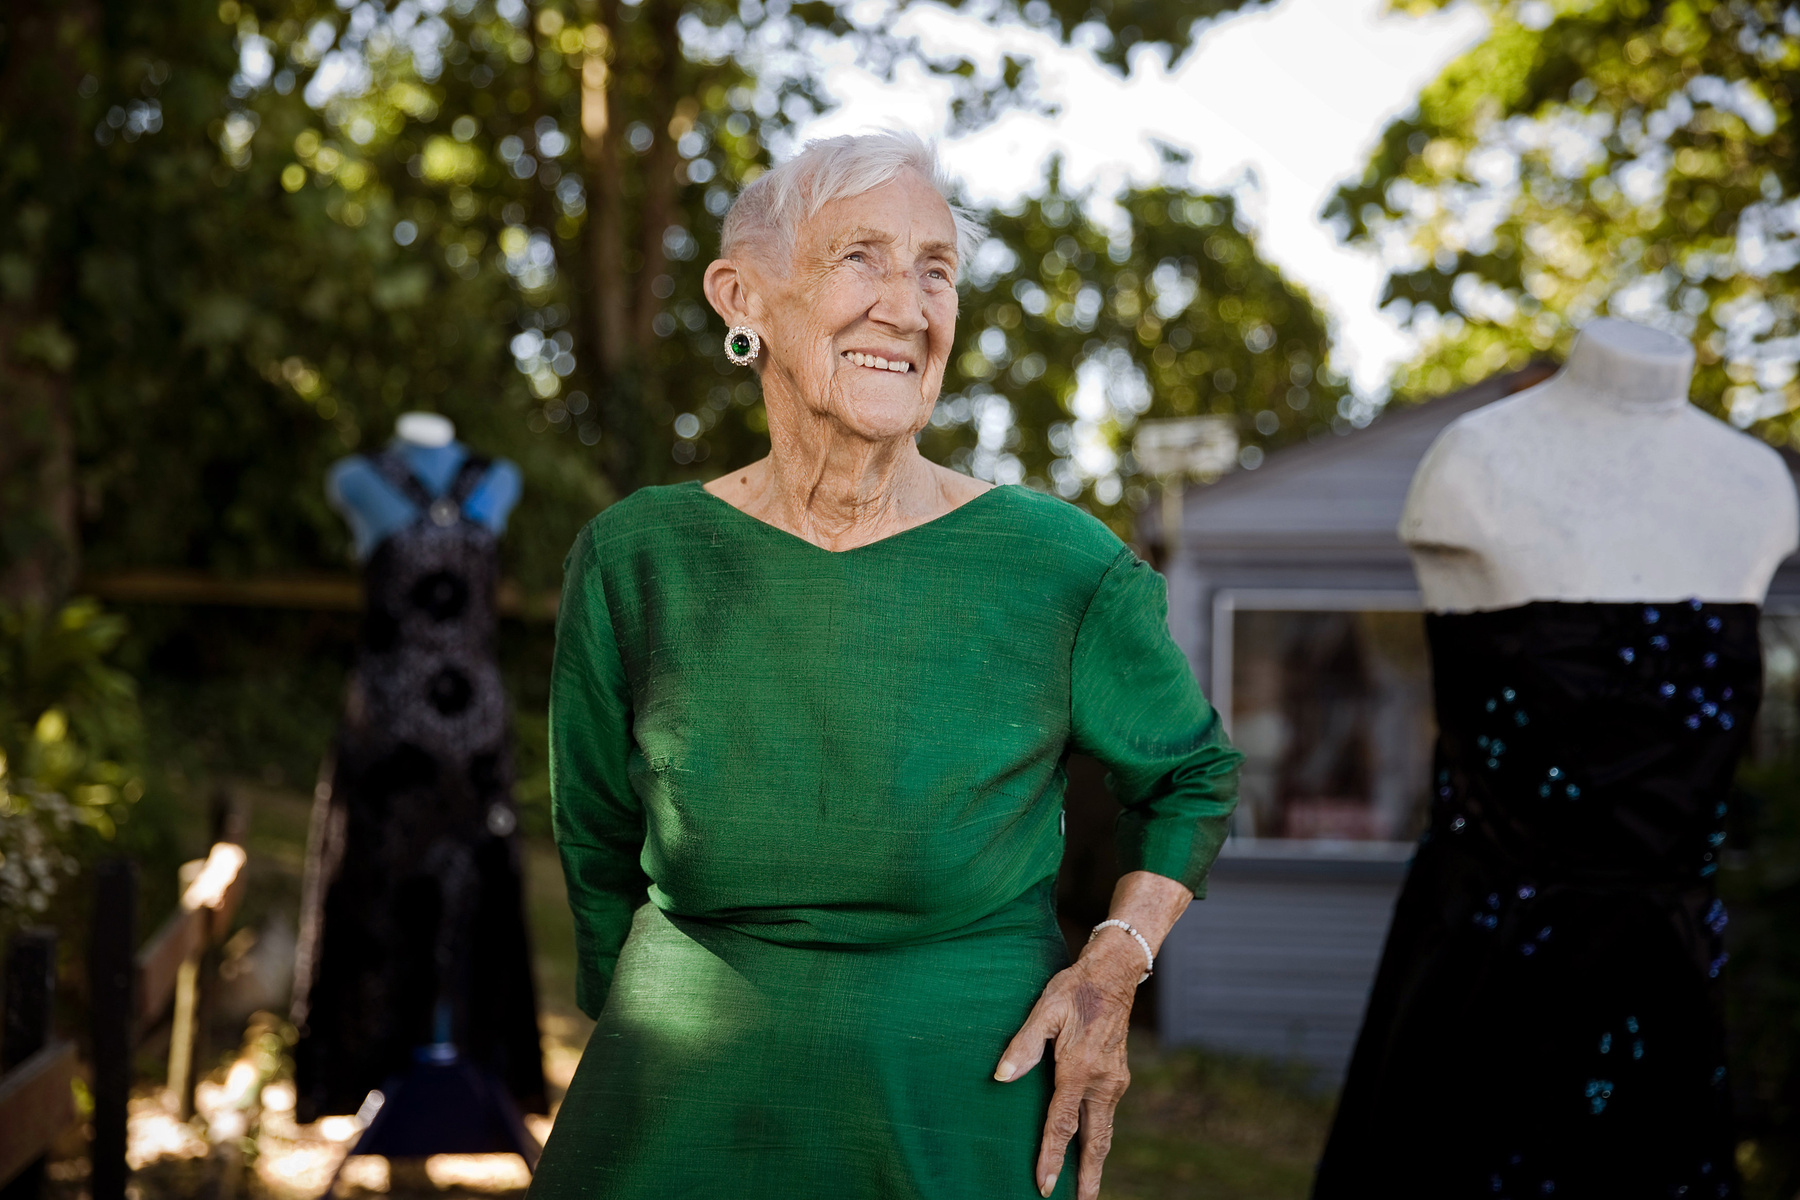 Hiába, hogy 101 éves, a varrást nem akarja abbahagyni, ezért nemrég vásárolt egy varrógépet. Igaz már leginkább csak a családtagjainak varr. Reméljük még sok ruhát készít az ükunokáknak. 